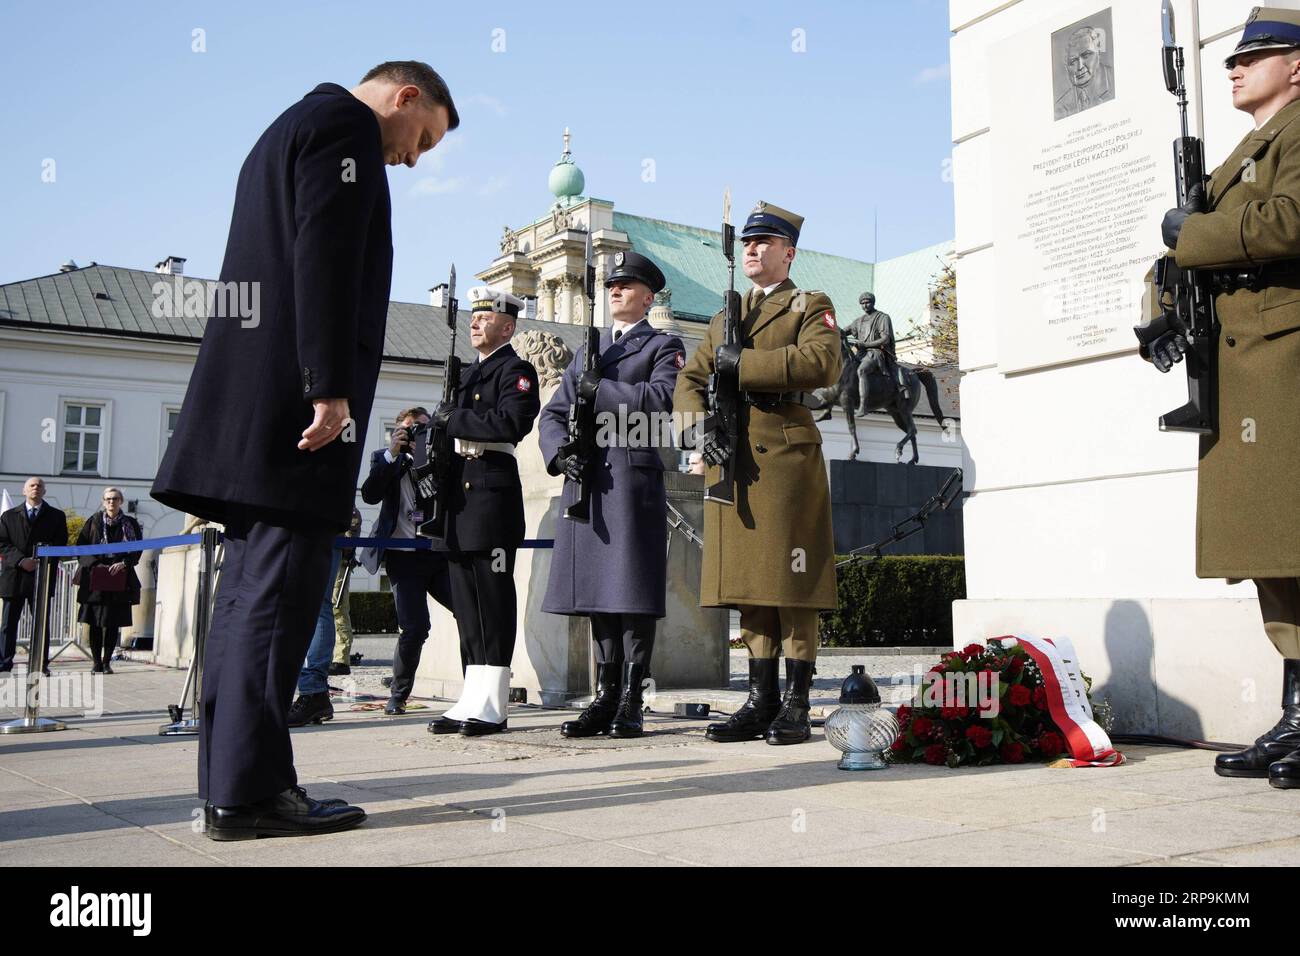 (190410) -- VARSOVIE, le 10 avril 2019 -- le président polonais Andrzej Duda assiste à une cérémonie au monument Lech Kaczynski, dans le centre de Varsovie, en Pologne, le 10 avril 2019. Les dirigeants politiques polonais animent tout au long du mercredi une série d événements commémoratifs pour marquer le neuvième anniversaire de l accident d avion de Smolensk, qui a tué 96 personnes, dont l ancien président polonais Lech Kaczynski. POLOGNE-VARSOVIE-SMOLENSK CRASH-ANNIVERSAIRE-COMMÉMORATION JAAPXARRIENS PUBLICATIONXNOTXINXCHN Banque D'Images